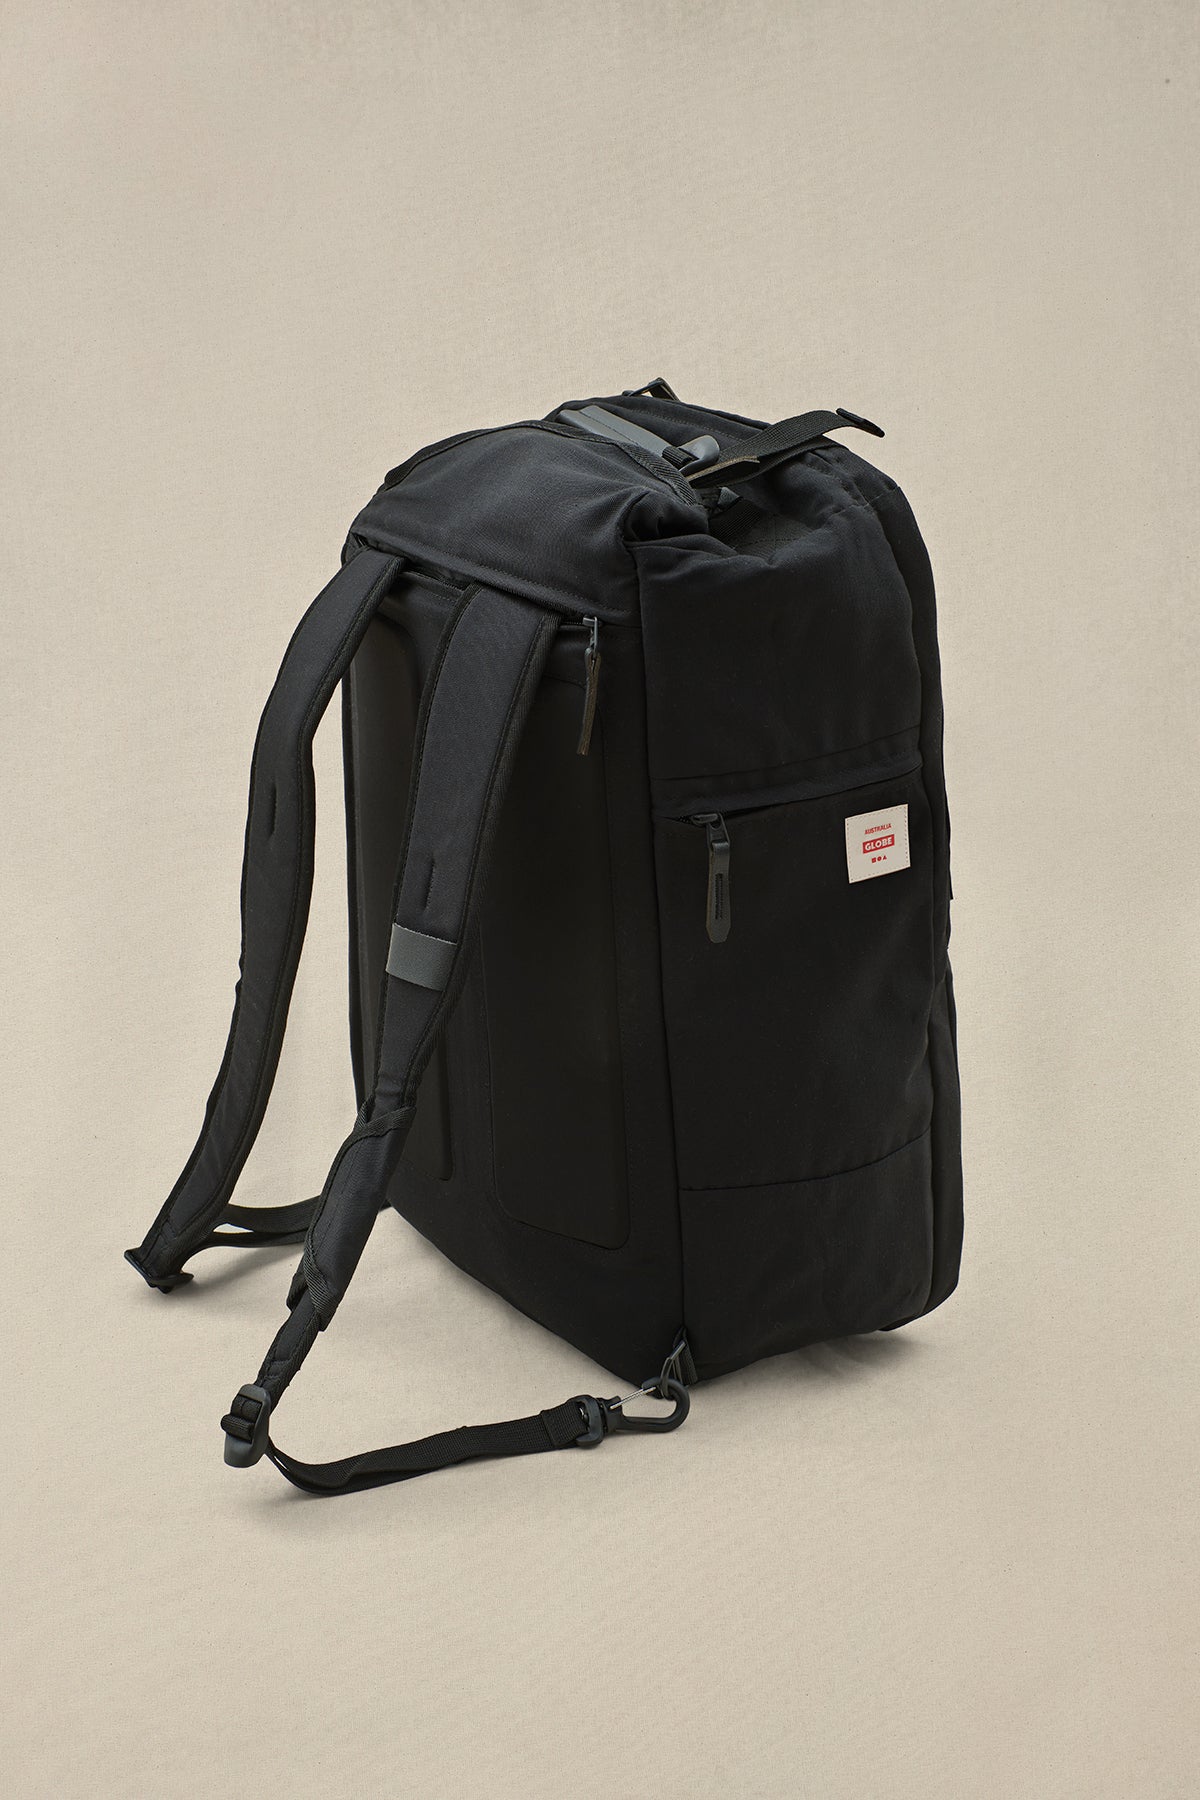 back view of Globe Black 3 in 1 traveler bag